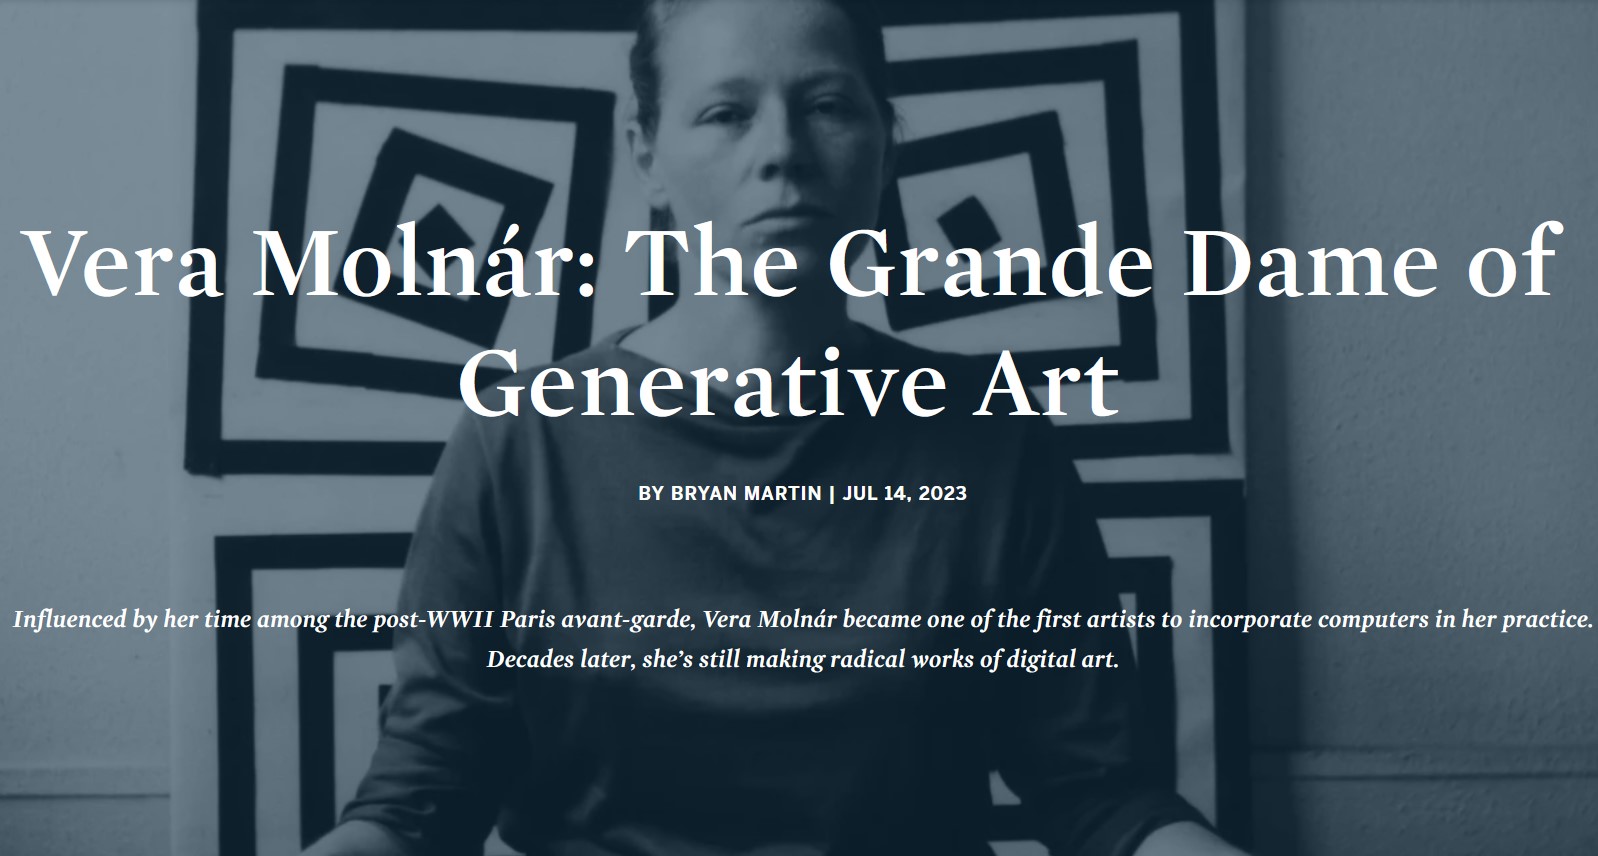 https://www.sothebys.com/en/articles/vera-molnar-the-grande-dame-of-generative-art